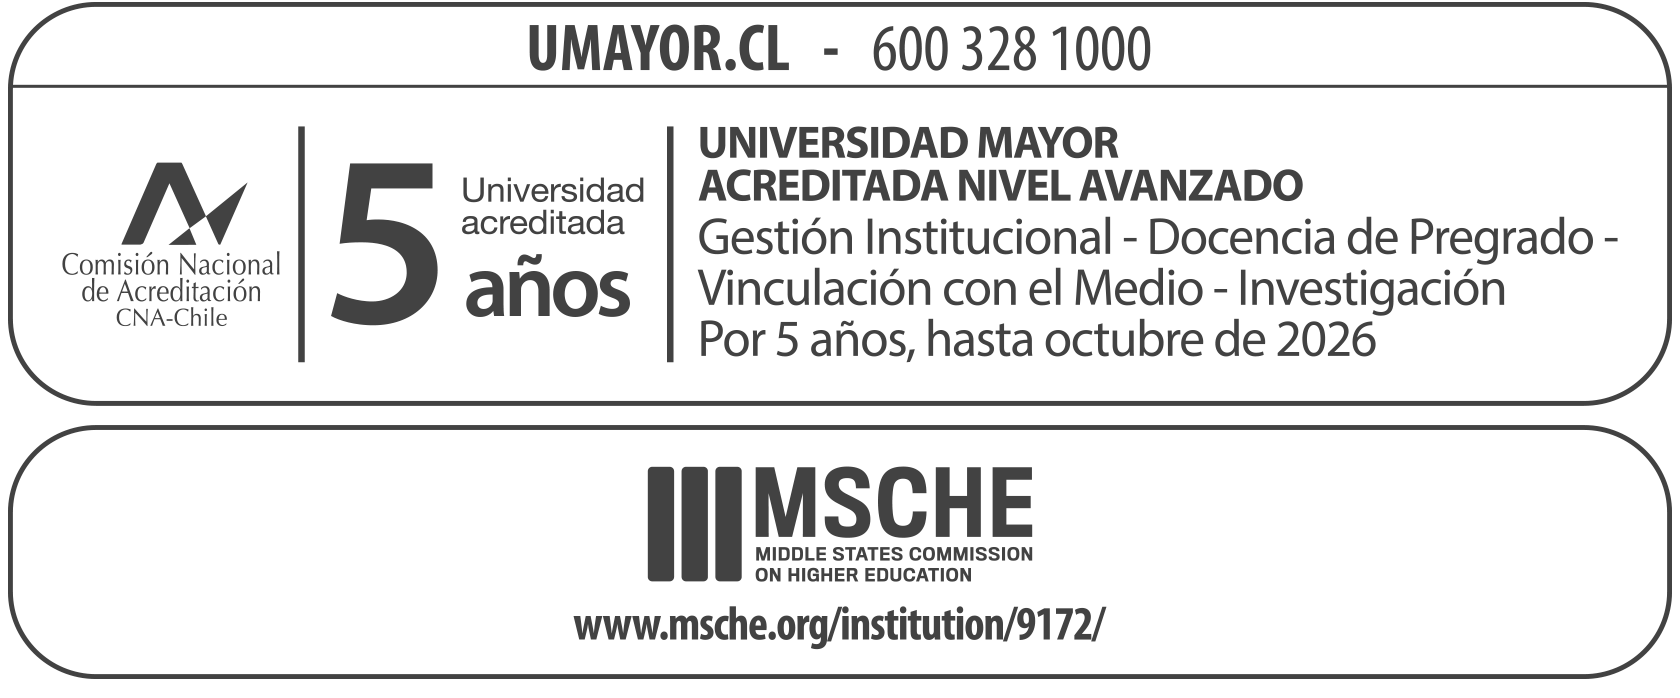 Universidad Acreditada 2015-2020 CNA